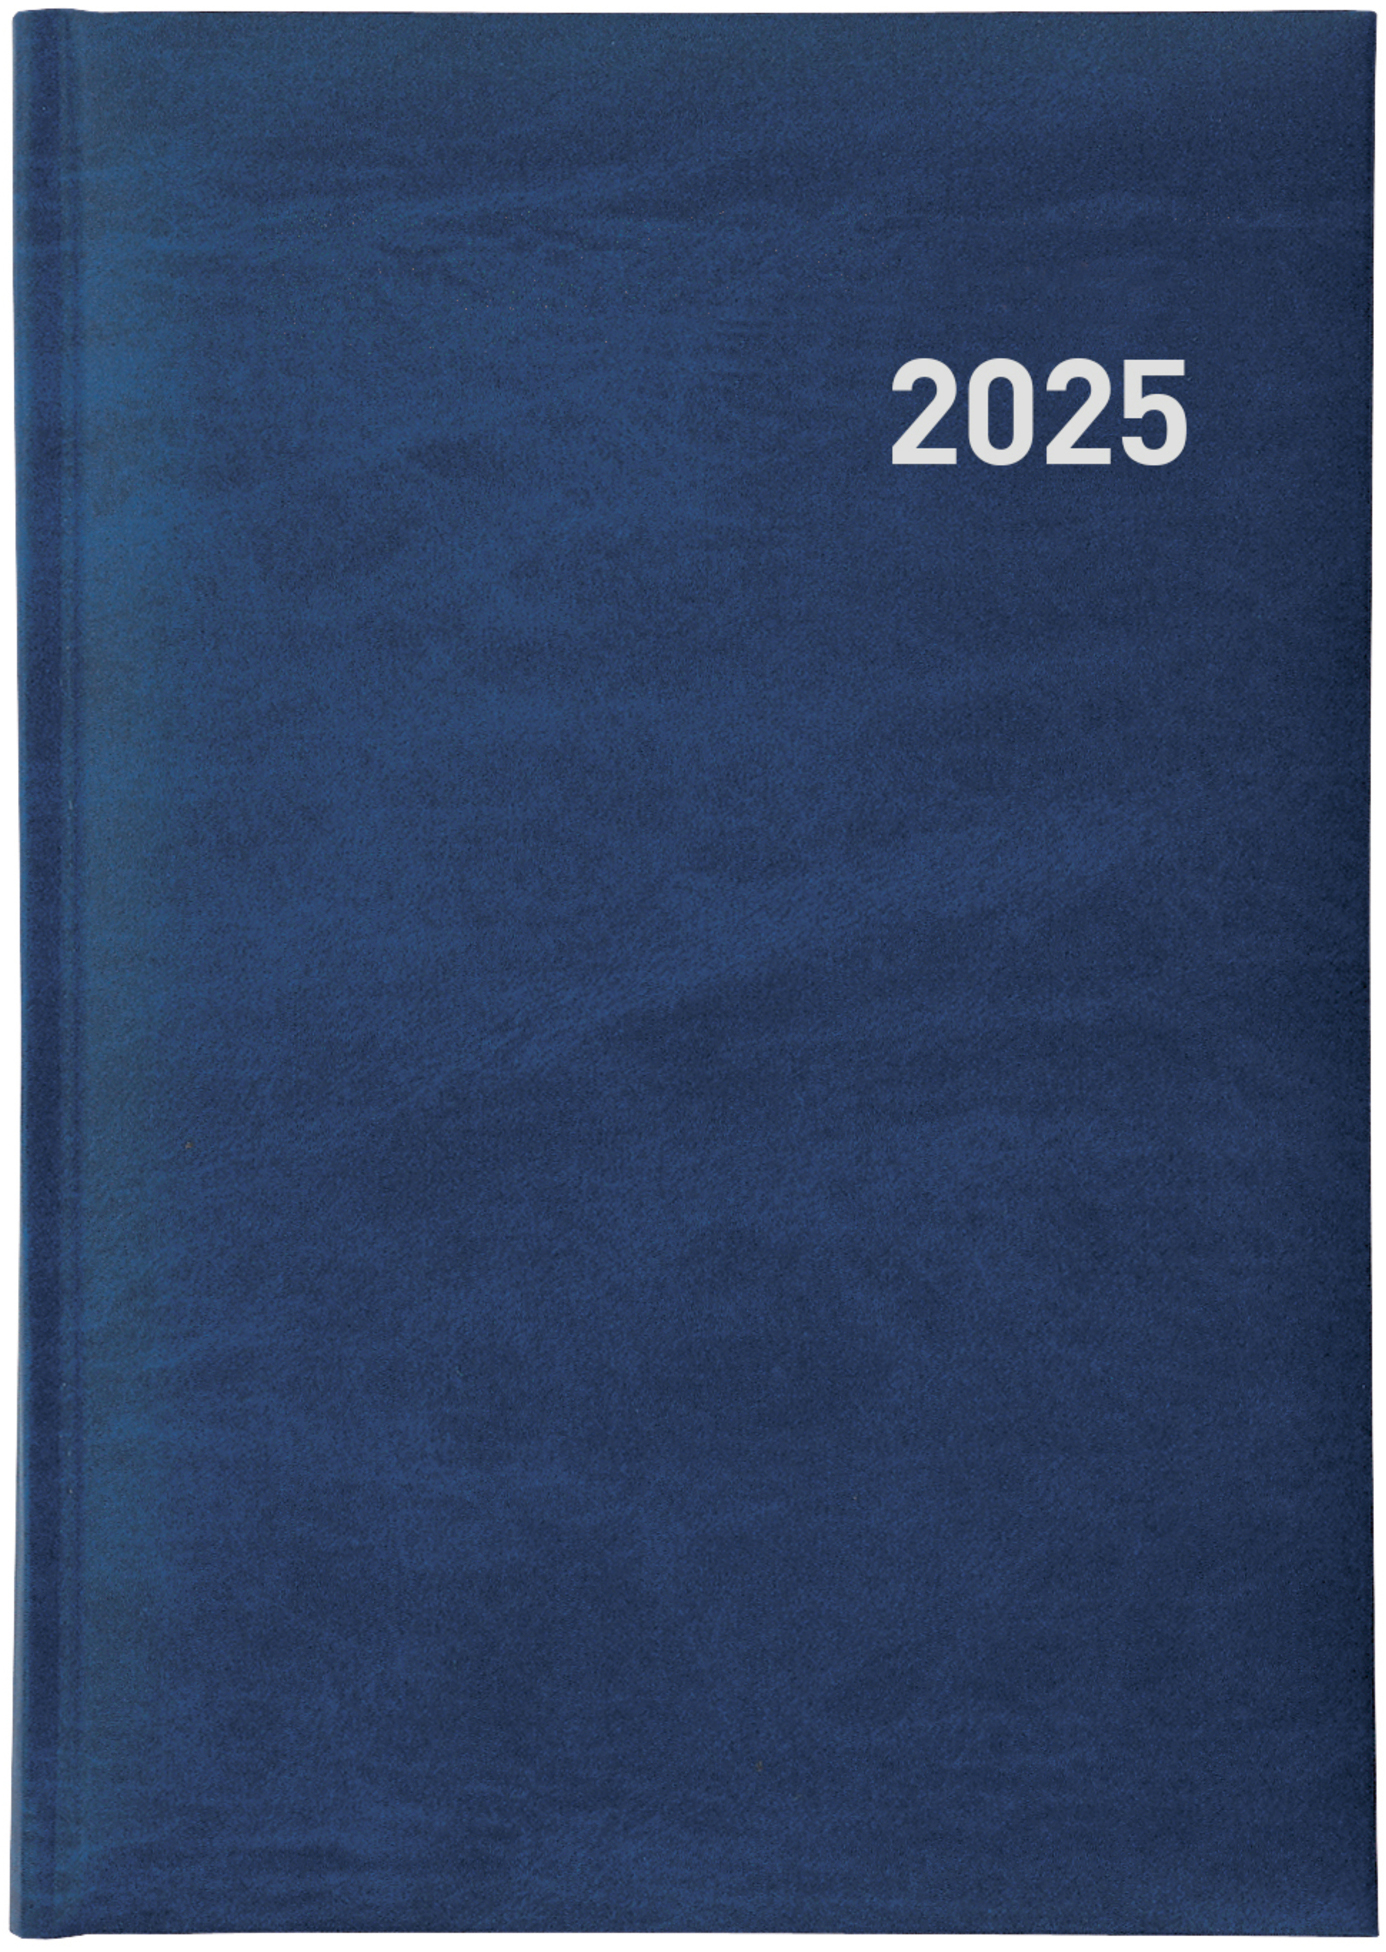 BIELLA Agenda Executive 2025 806510050025 1J/1P bleu ML 14.5x20.5cm